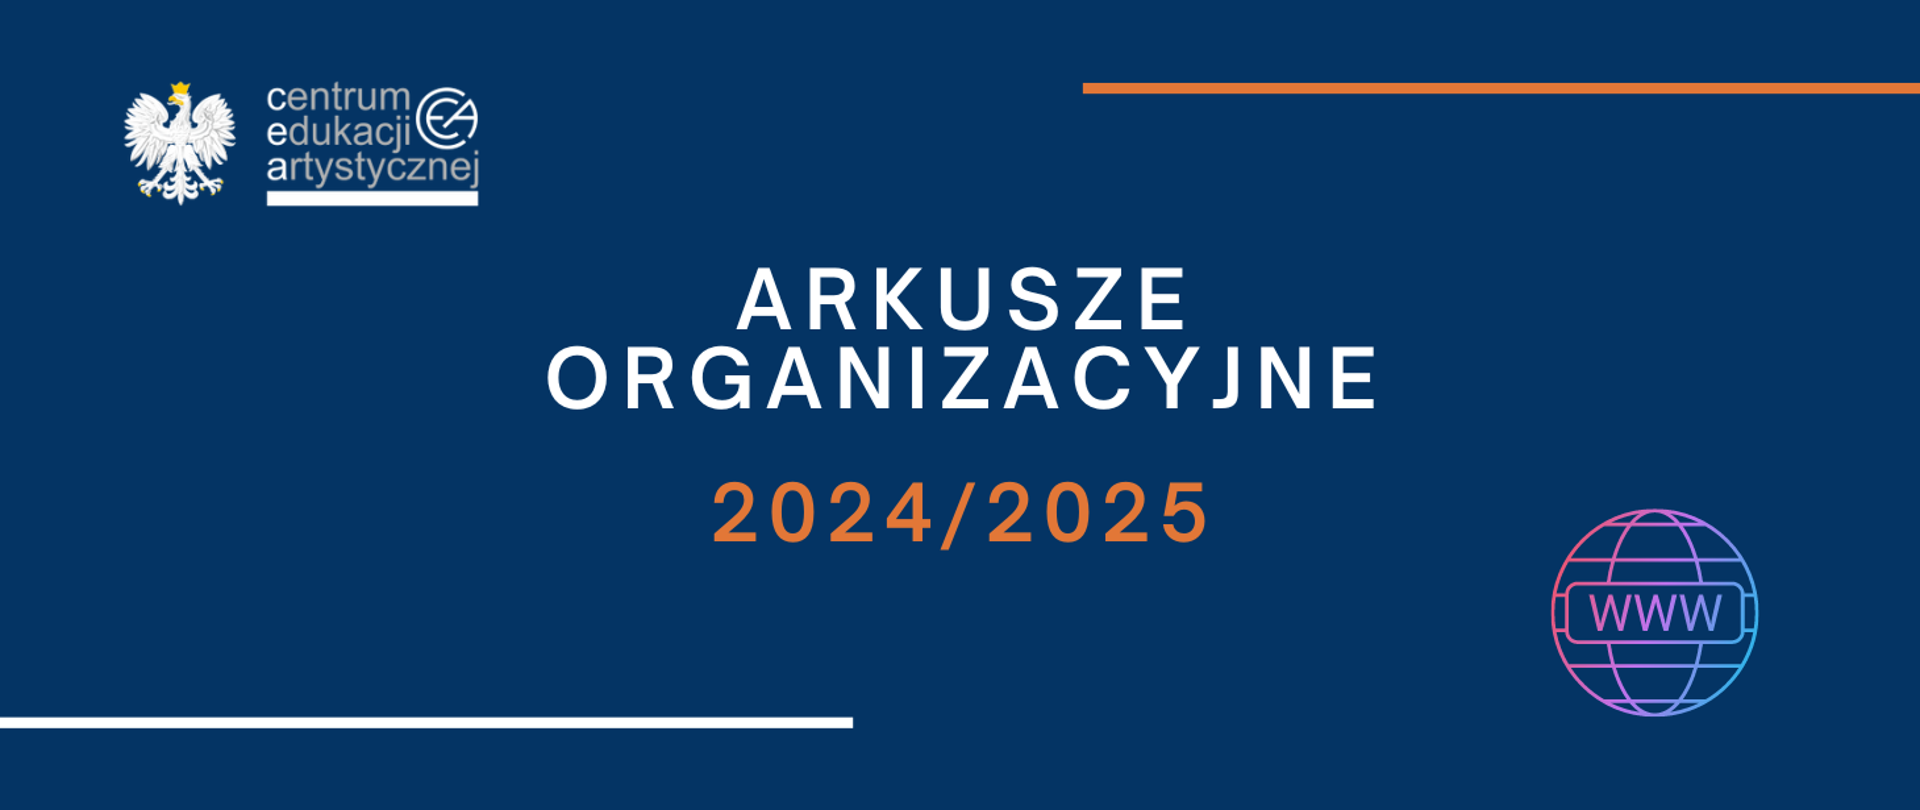 Niebieska grafika z logo CEA w lewym górnym rogu ikoną www w prawym dolnym rogu i tekstem "Arkusze organizacyjne 2024/2025"